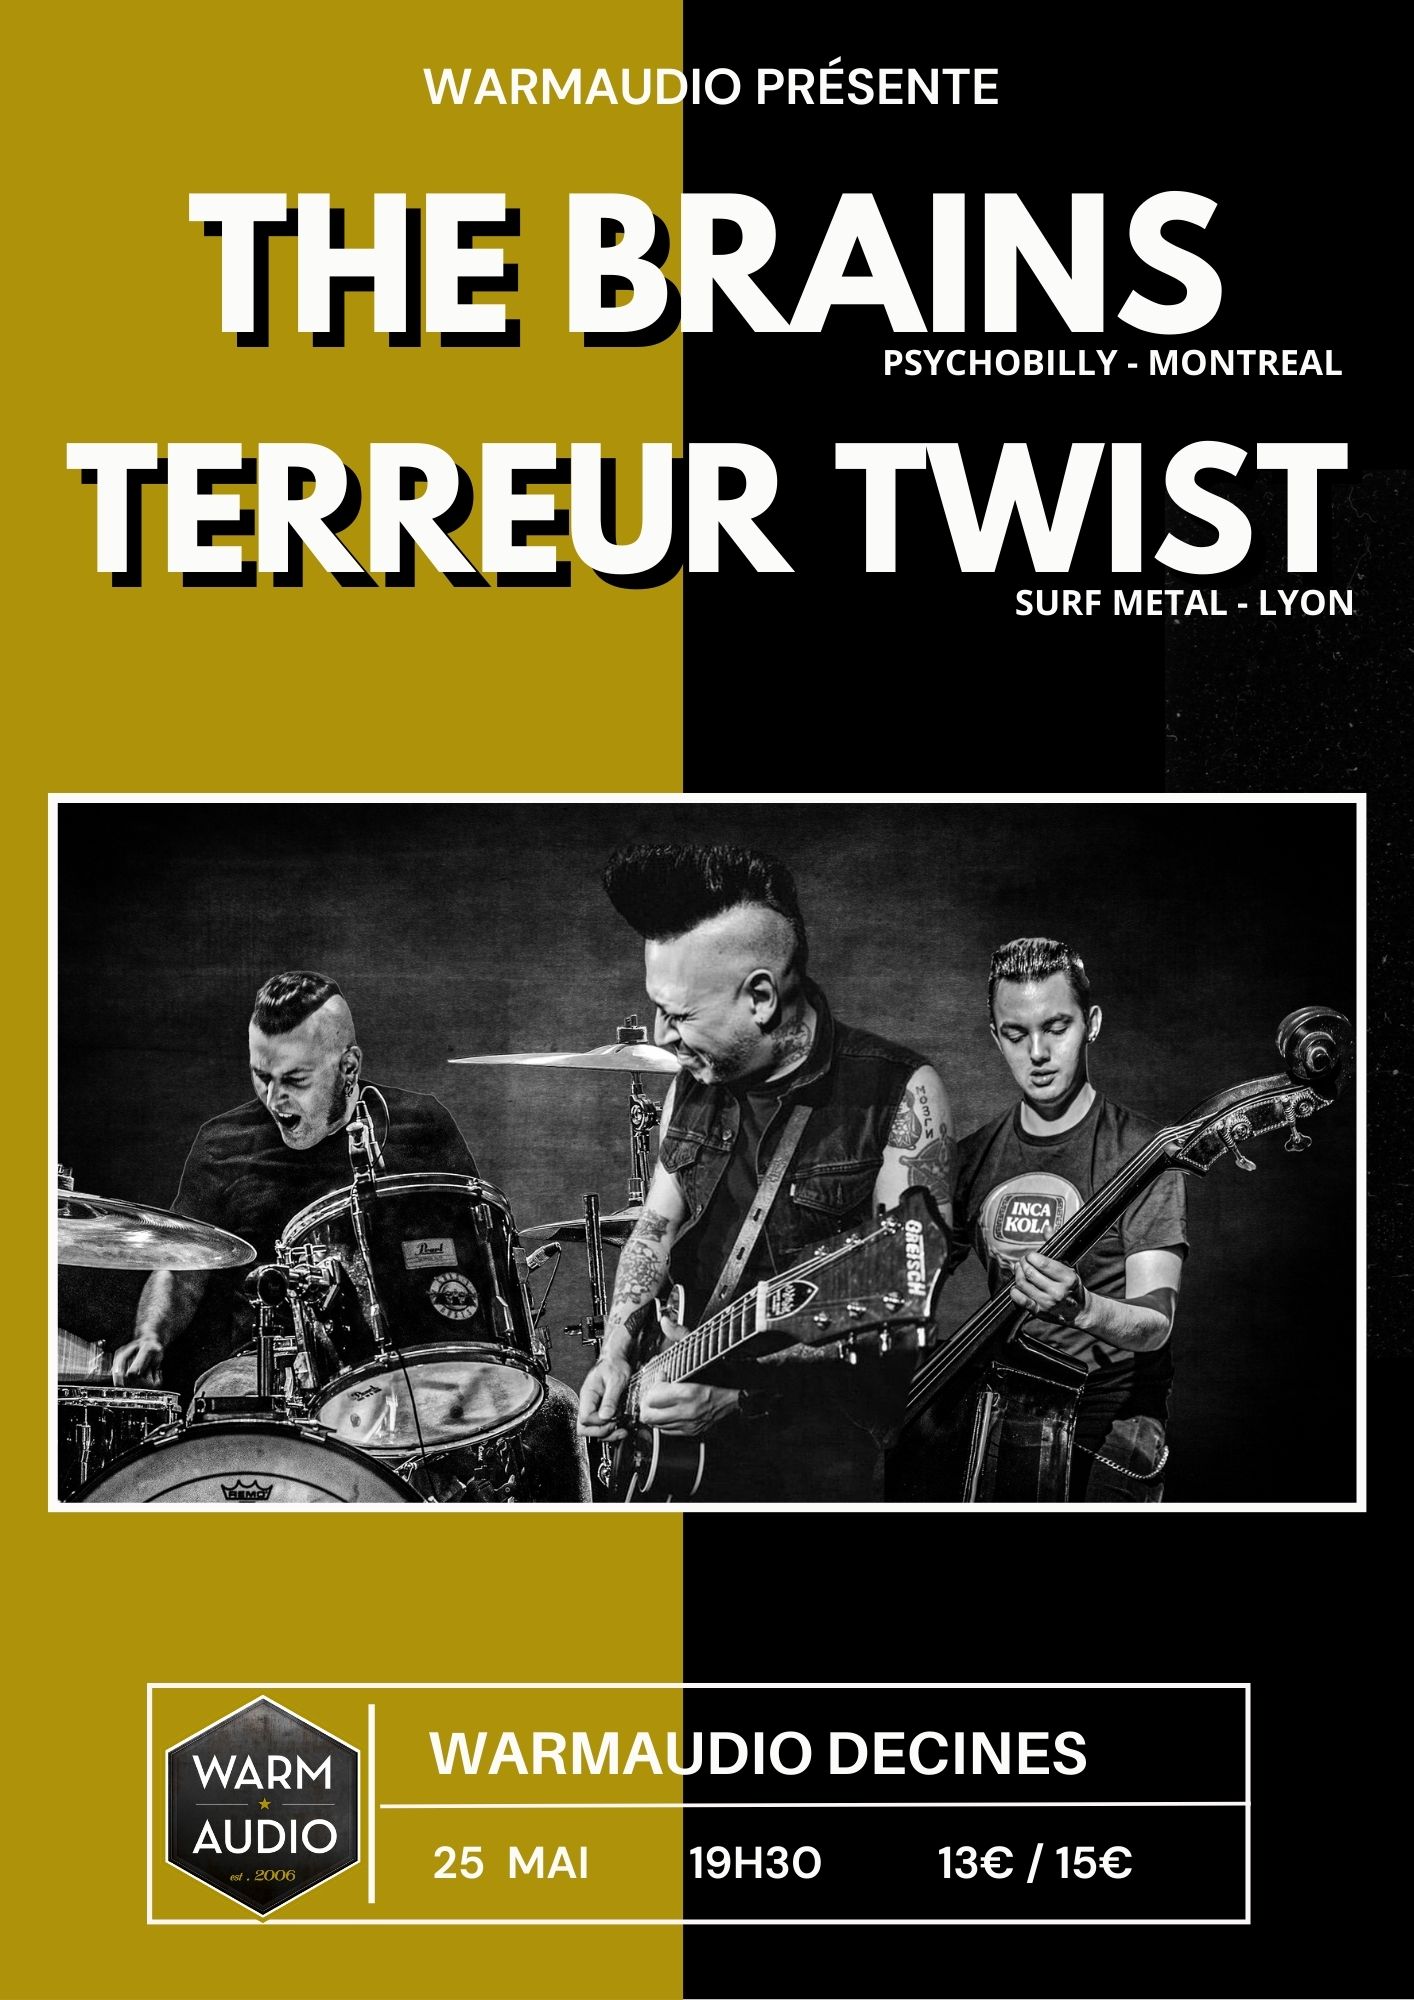 THE BRAINS + TERREUR TWIST